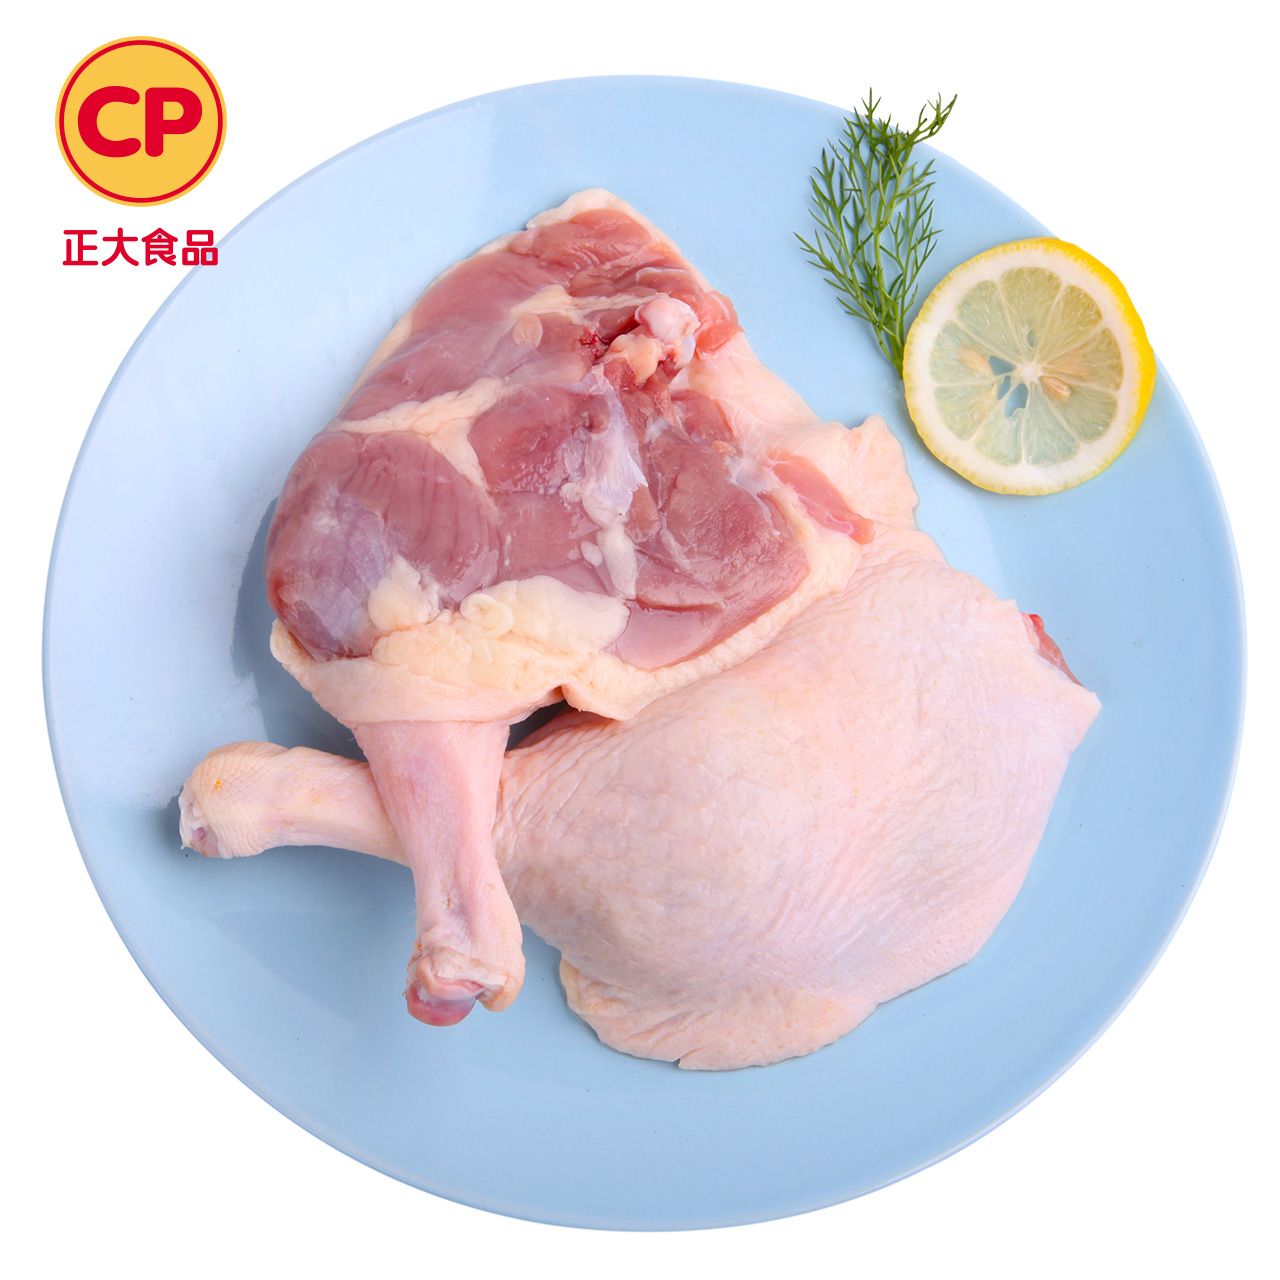 cp 正大食品 【满减】优选鸭腿生鲜鸭腿 500g/袋